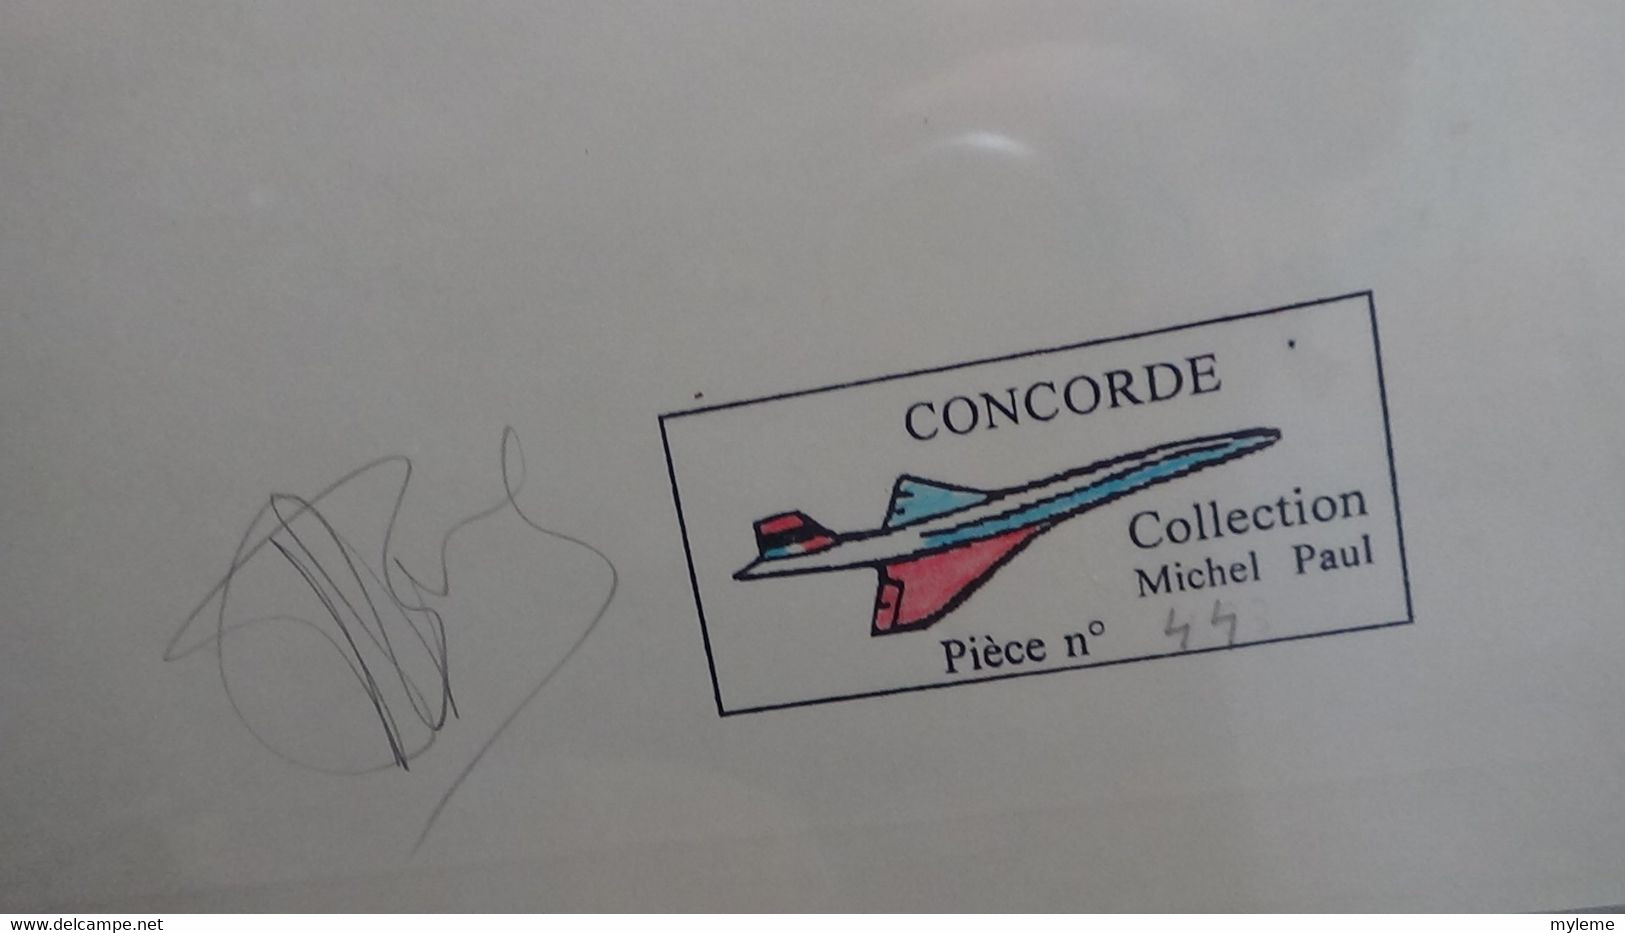 Q88 Thématique Concorde en 6 volumes SAFE avec étui. Volume N° 6 Voir commentaires. A saisir  !!